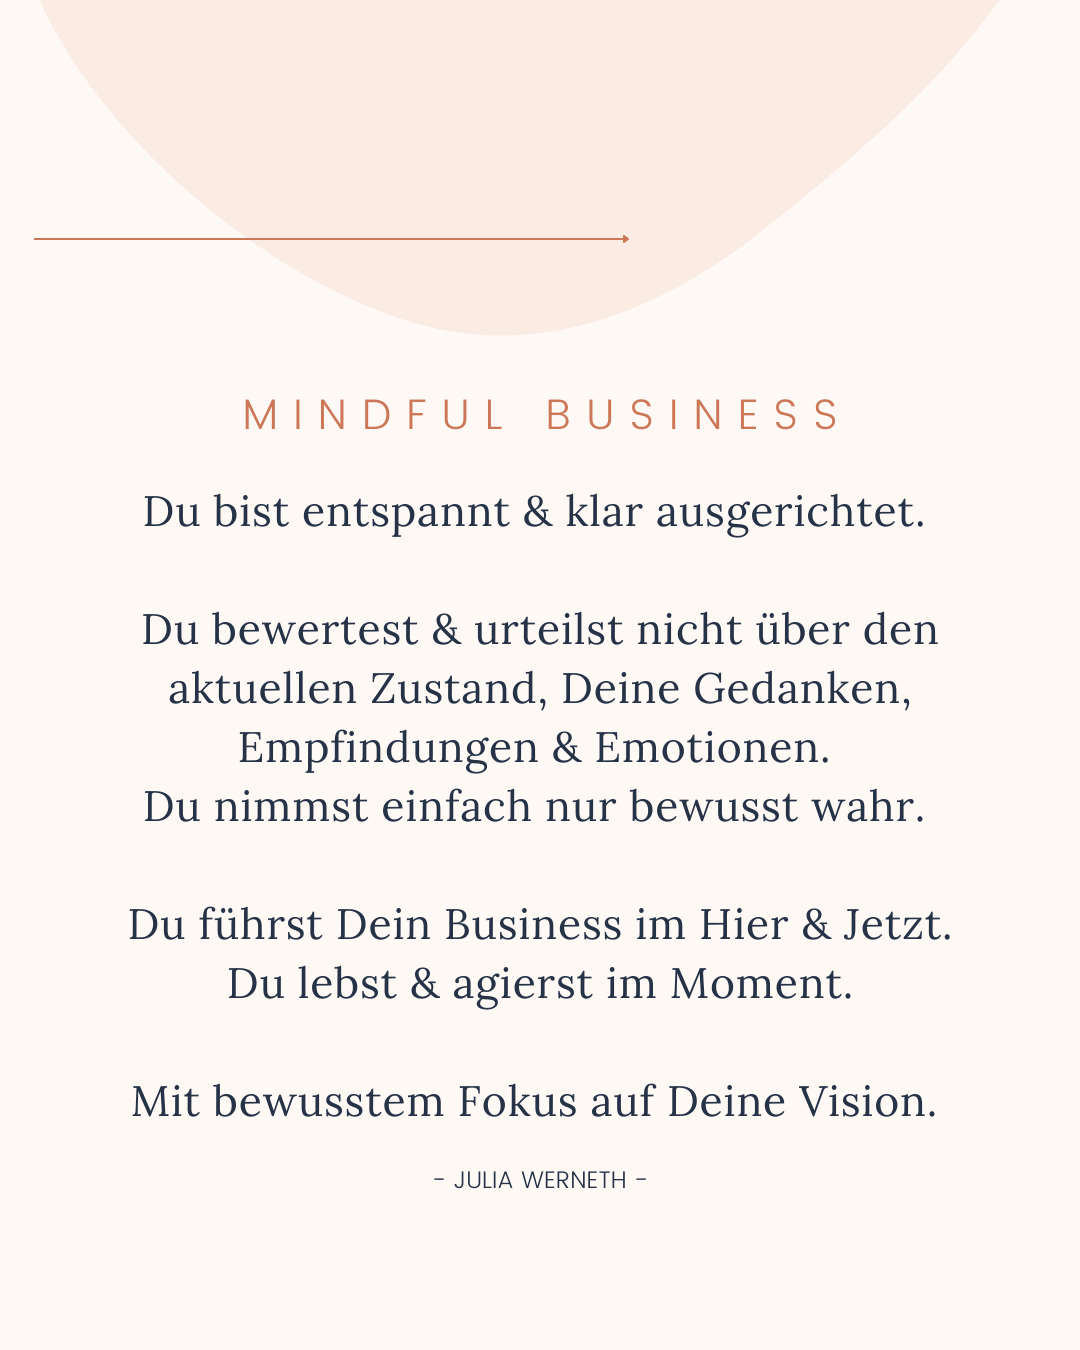 Mindful Business Erklärung - Julia Werneth